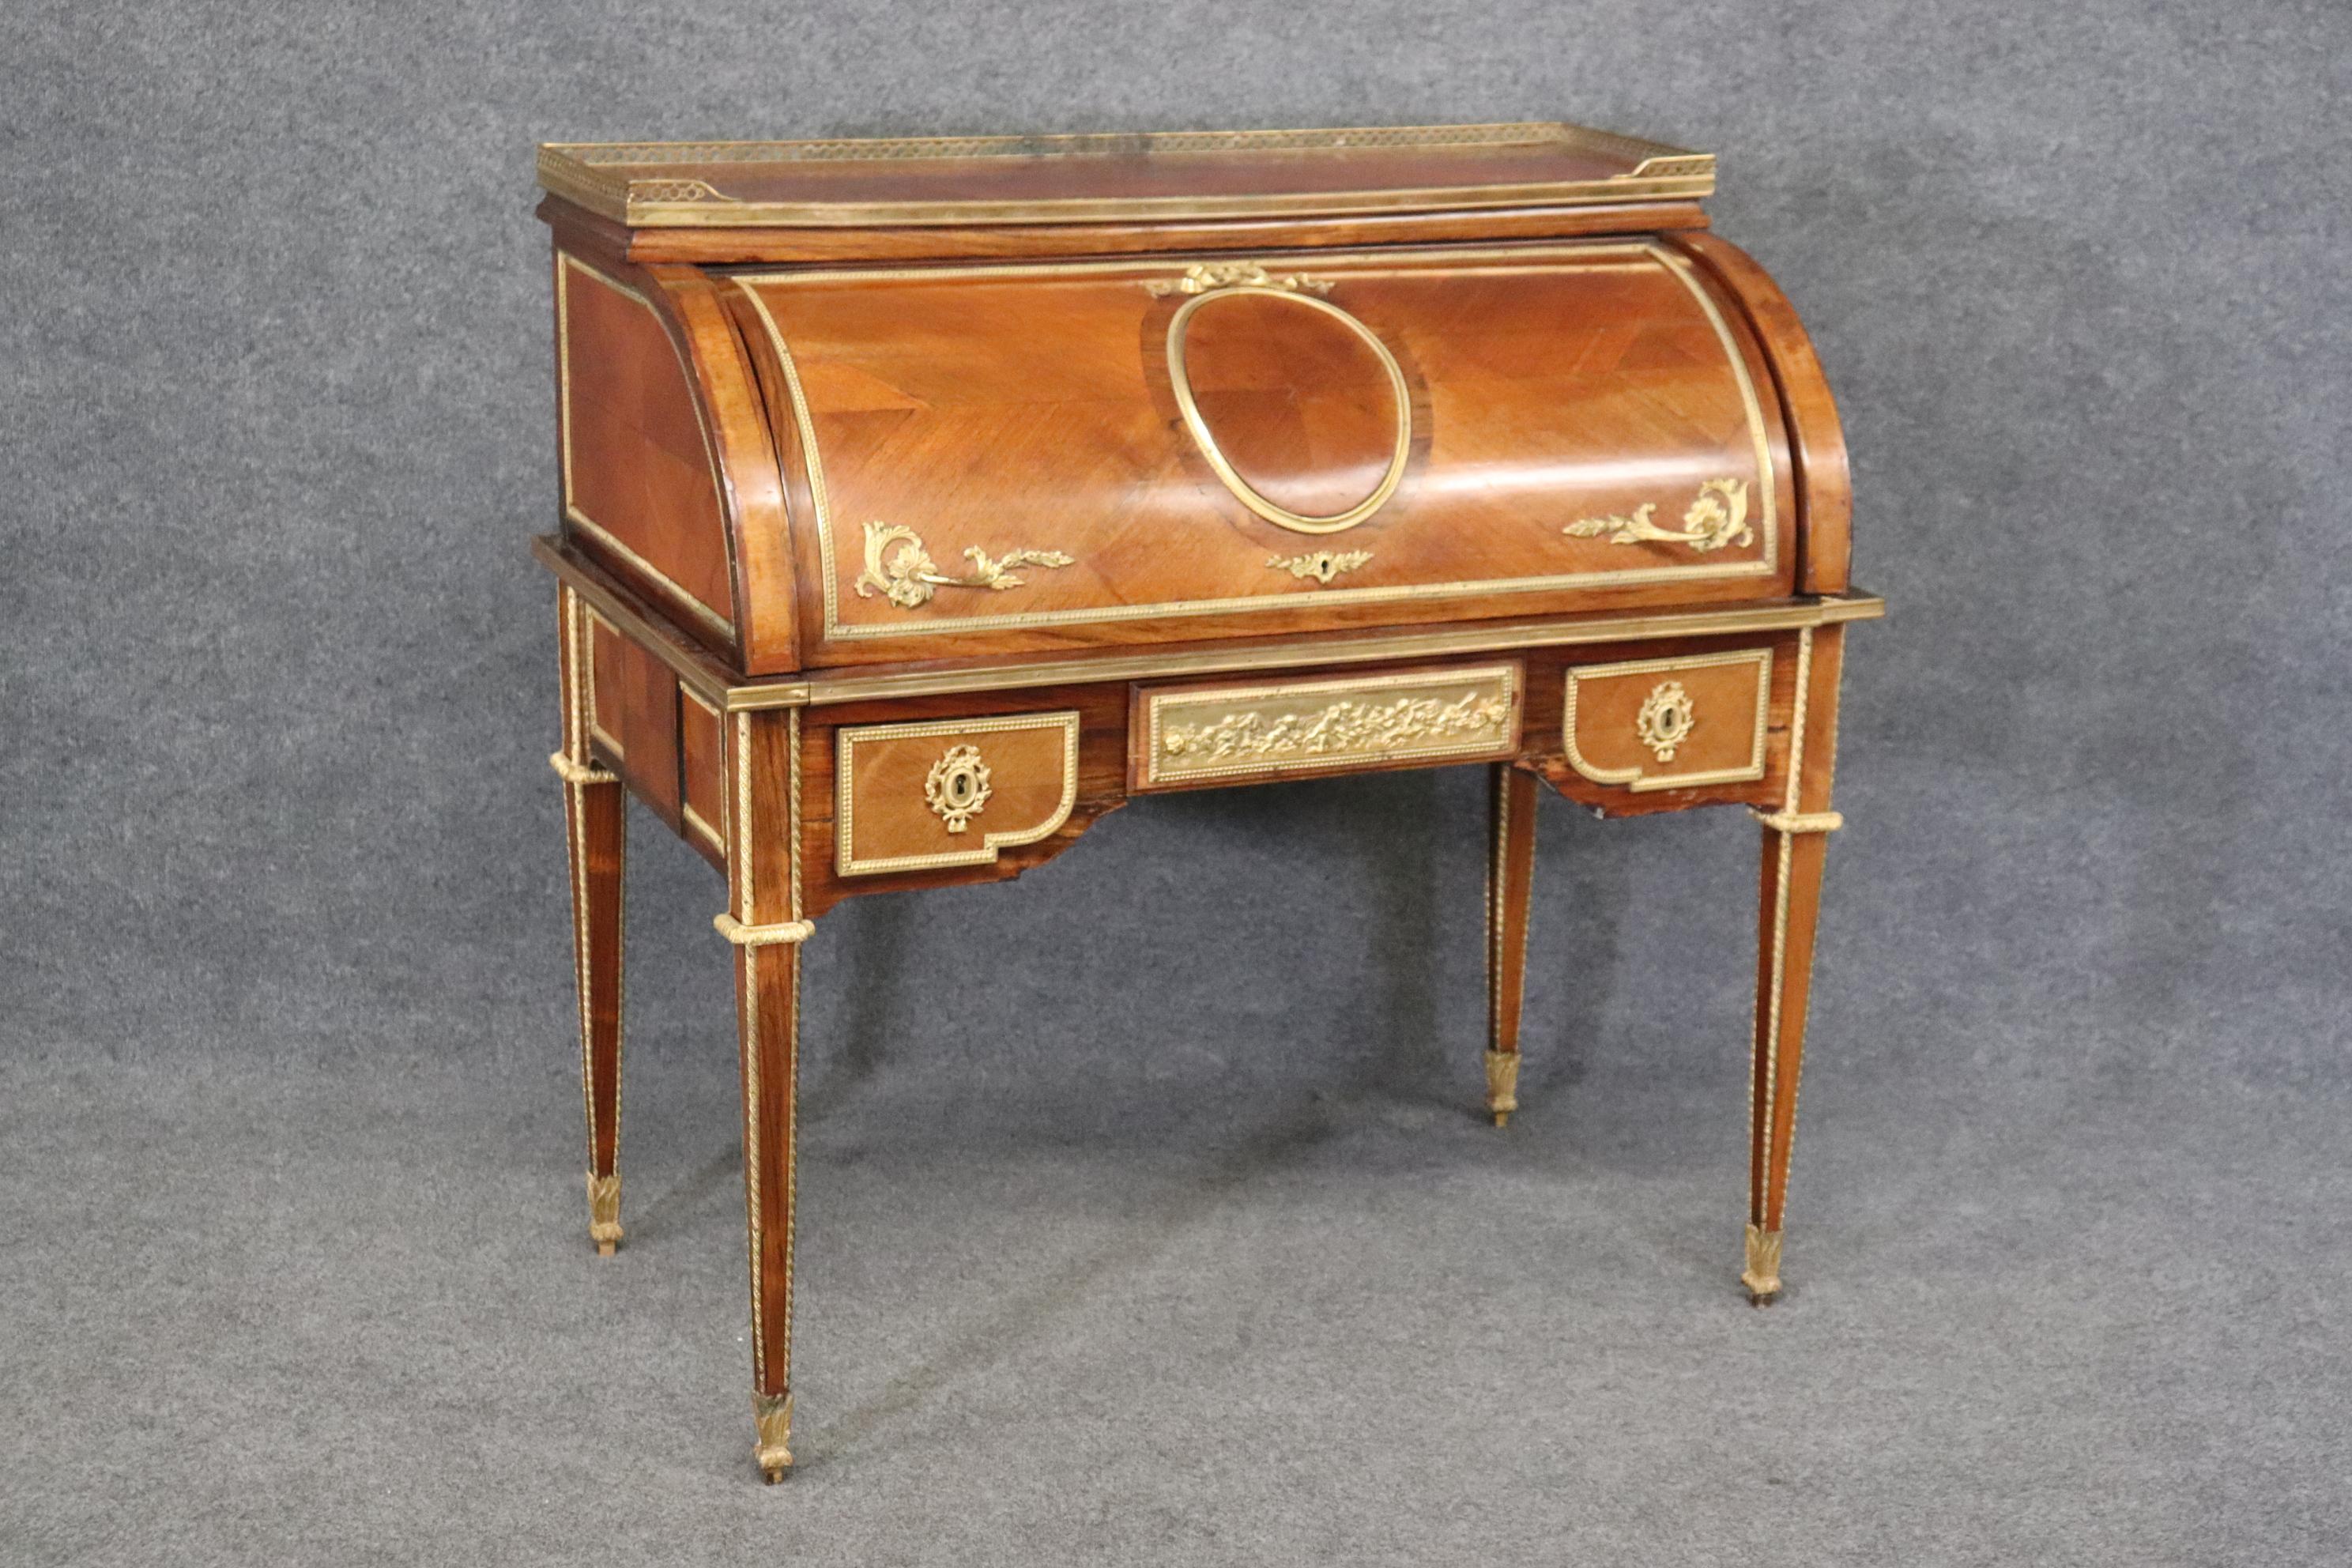 Dies ist eine absolut atemberaubende Gold Dore' Bronze montiert Zylinder Schreibtisch mit den besten Cherub oder Putten Szenen und andere Bronze-Montagen, die es absolut superb machen. Der Schreibtisch stammt aus der Zeit um 1900 oder sogar noch